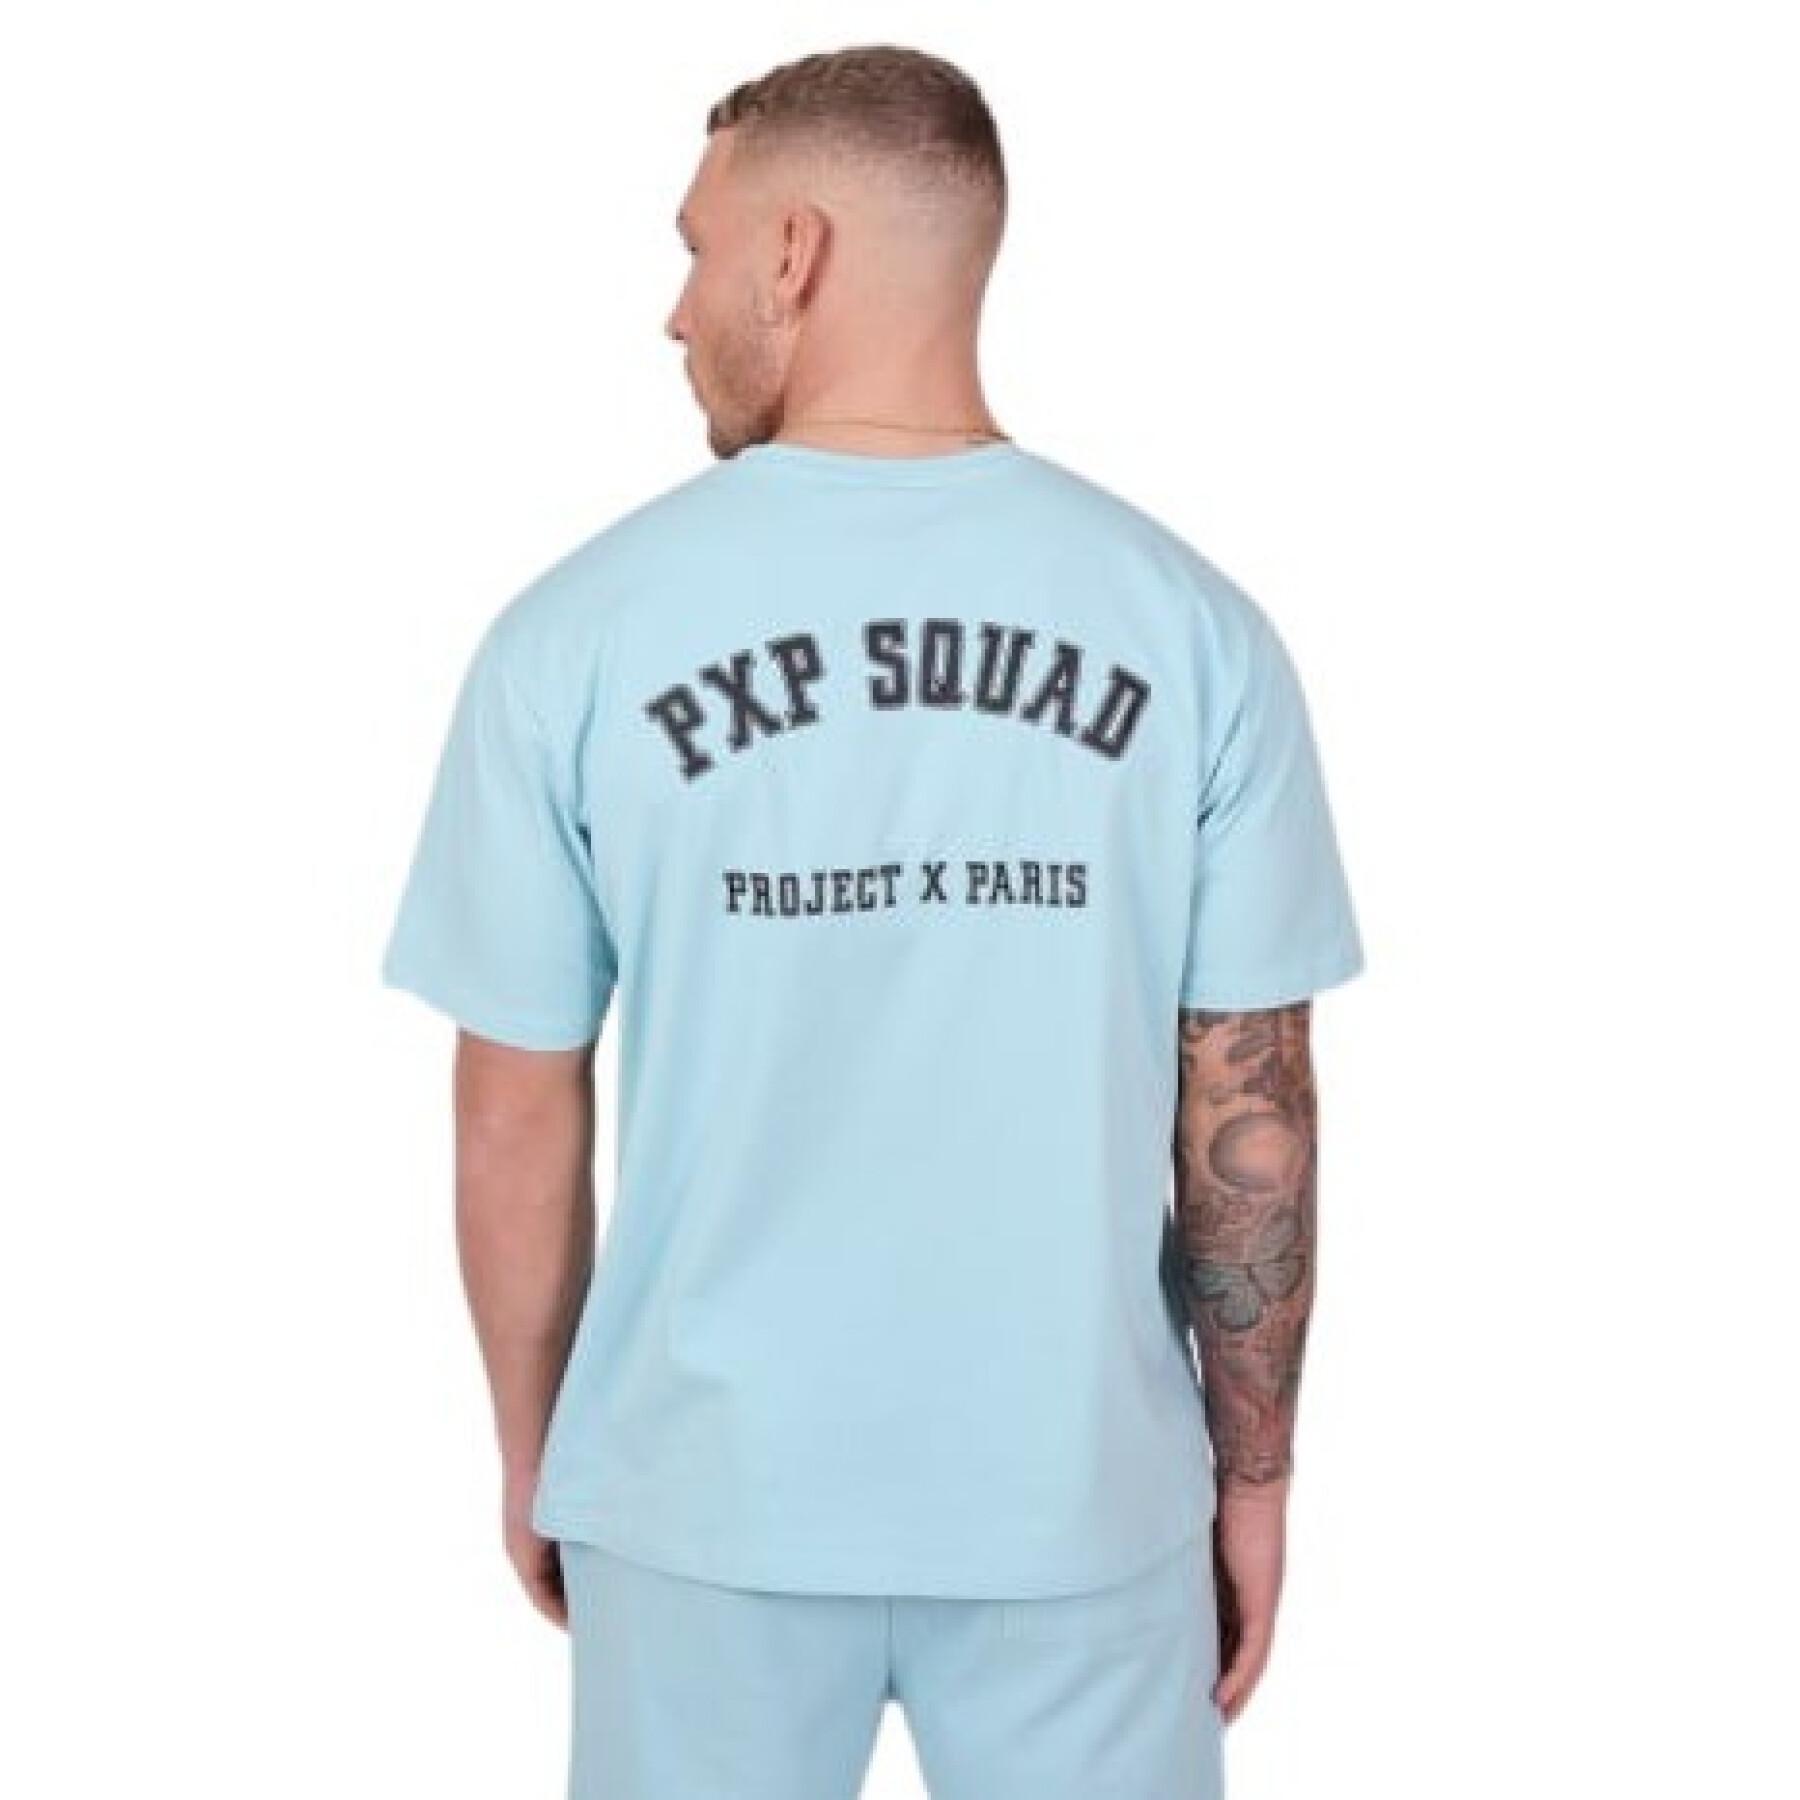 Camiseta Project X Paris pxp squad